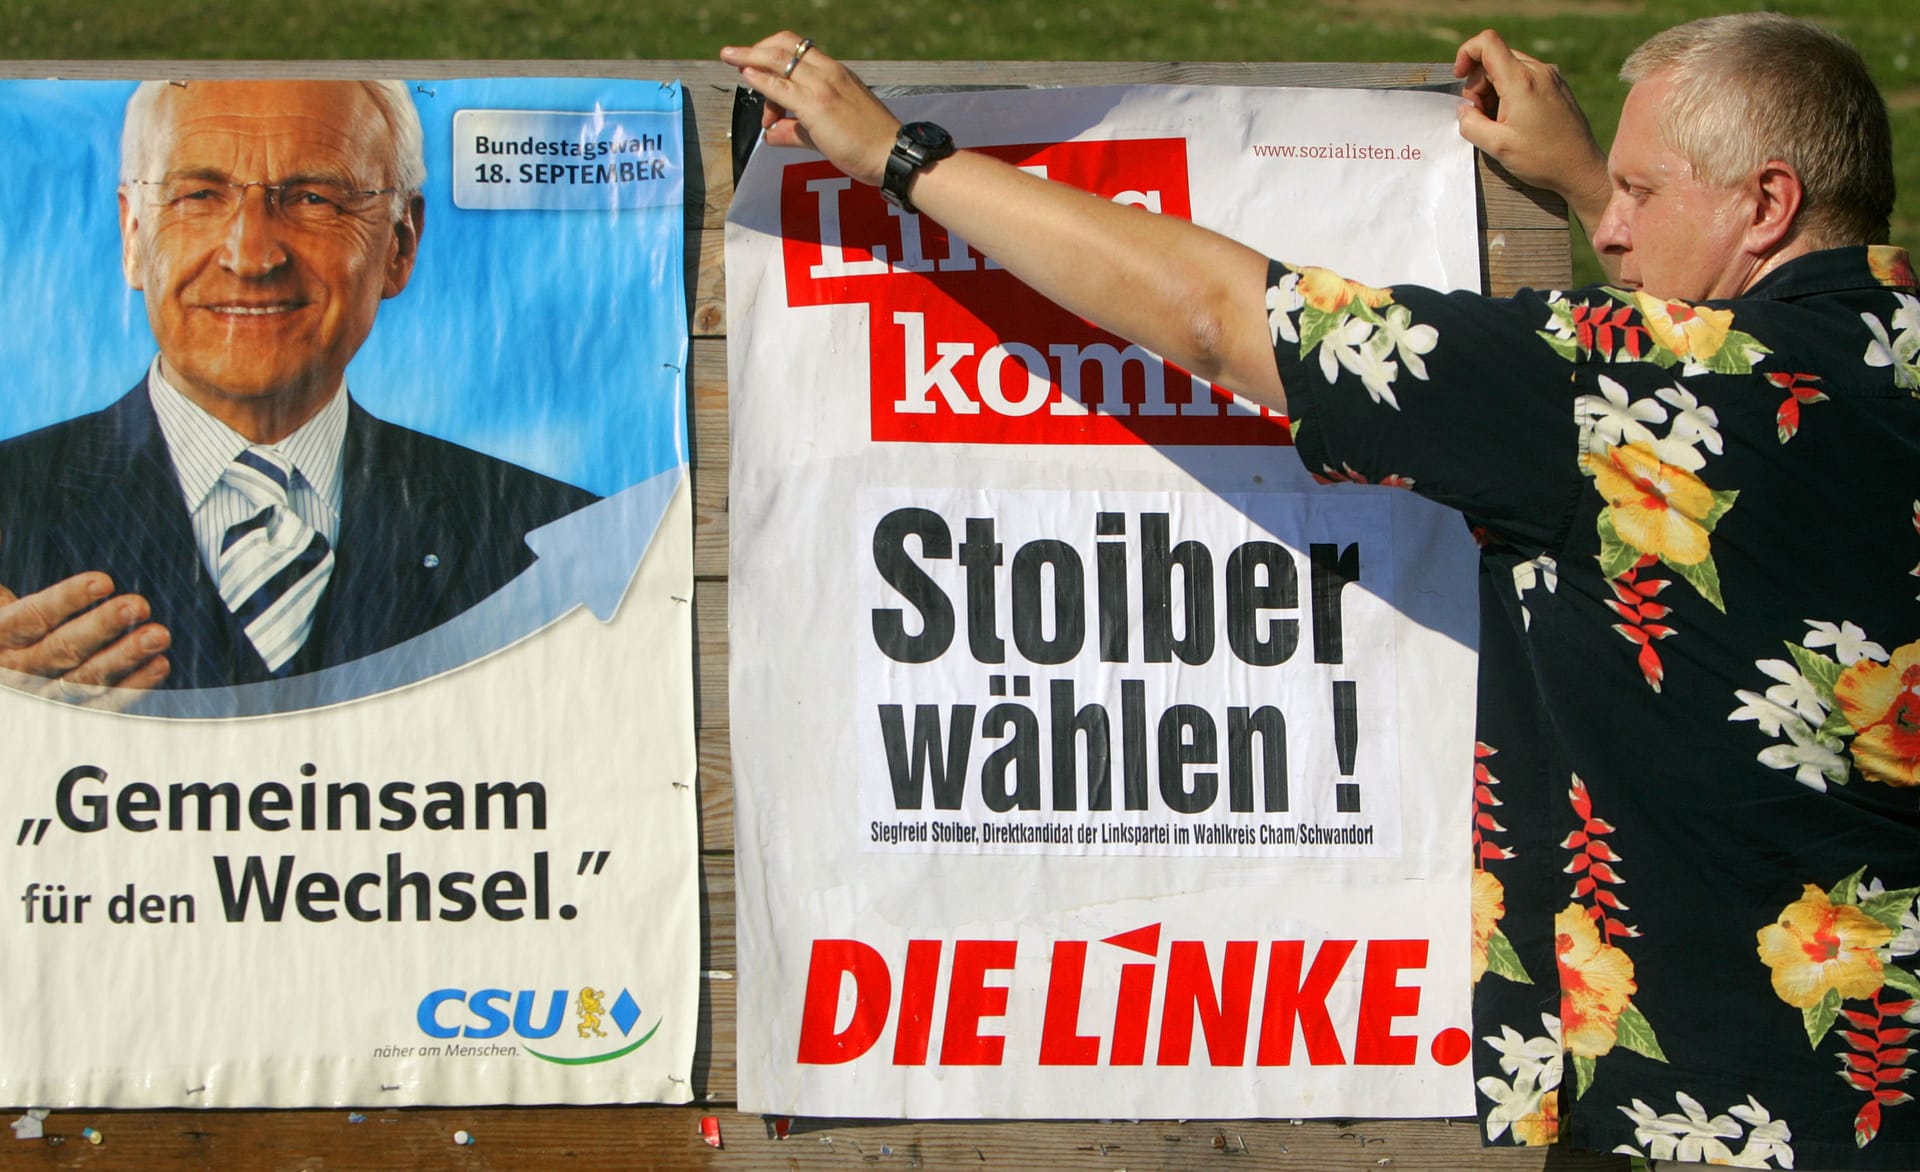 Das ist nur auf den ersten Blick eine Verwechslung, denn der Kandidat der bayerischen Linken aus dem Wahlkreis Cham/Schwandorf heißt tatsächlich Siegfried Stoiber und hängt hier neben Edmund Stoiber von der CSU. Ob das taktisch klug ist, das so zu plakatieren, ist fraglich.